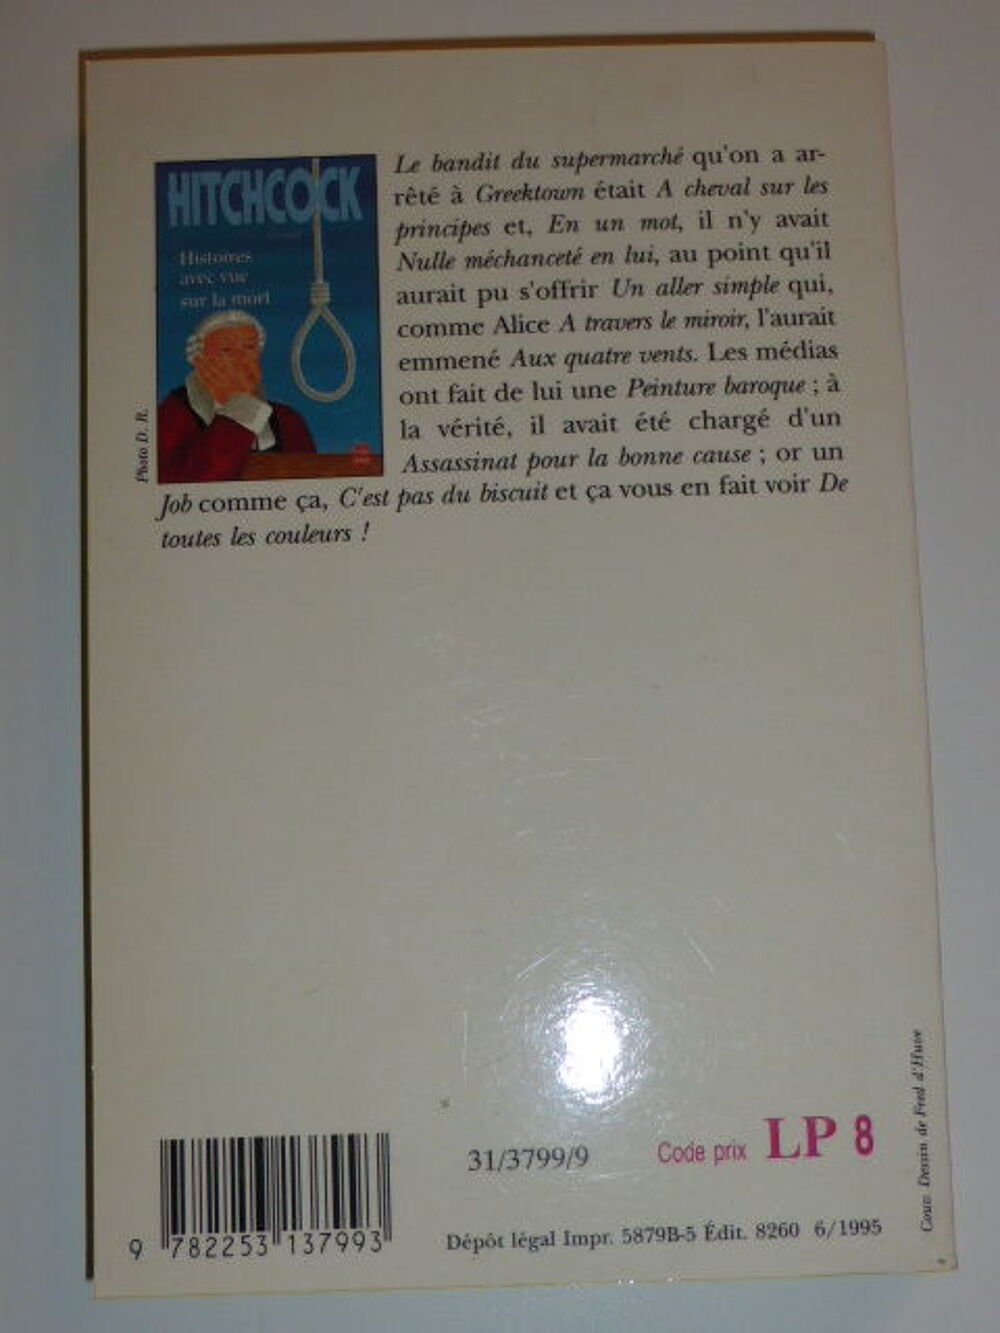 Histoires avec vue sur la mort Hitchcock Livre de poche Livres et BD